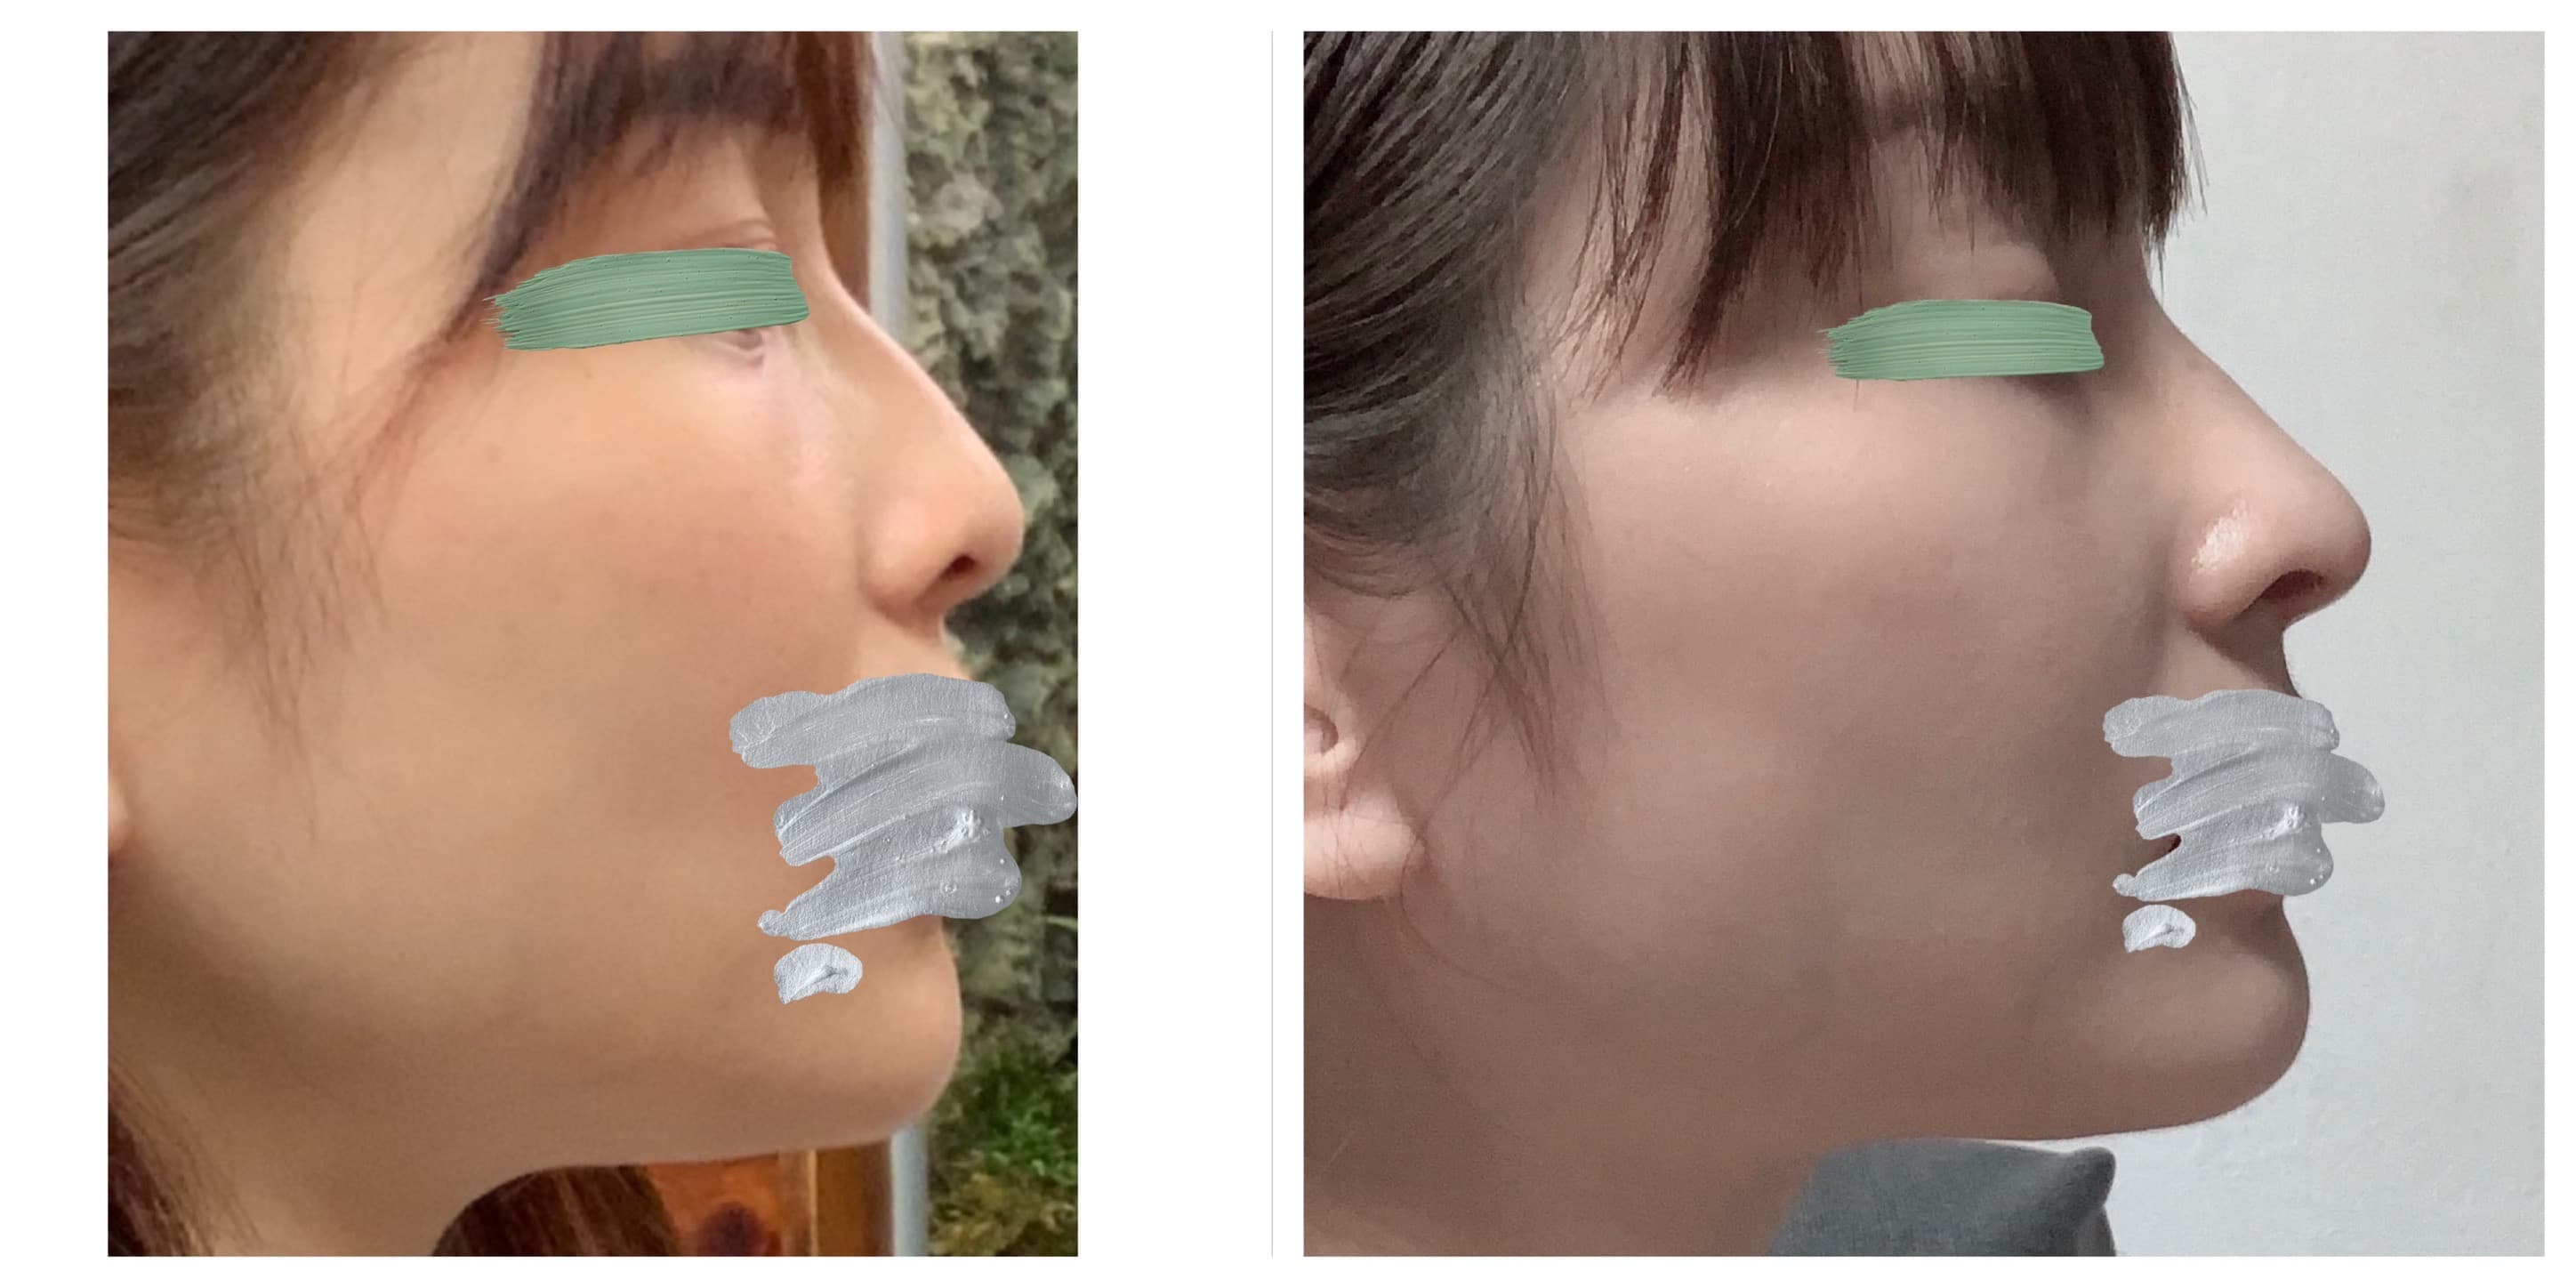 自肋結構式鼻整形 - 同時矯正鼻駝峰、鼻中膈彎曲 - 林漢琛醫師 耳鼻喉頭頸外科